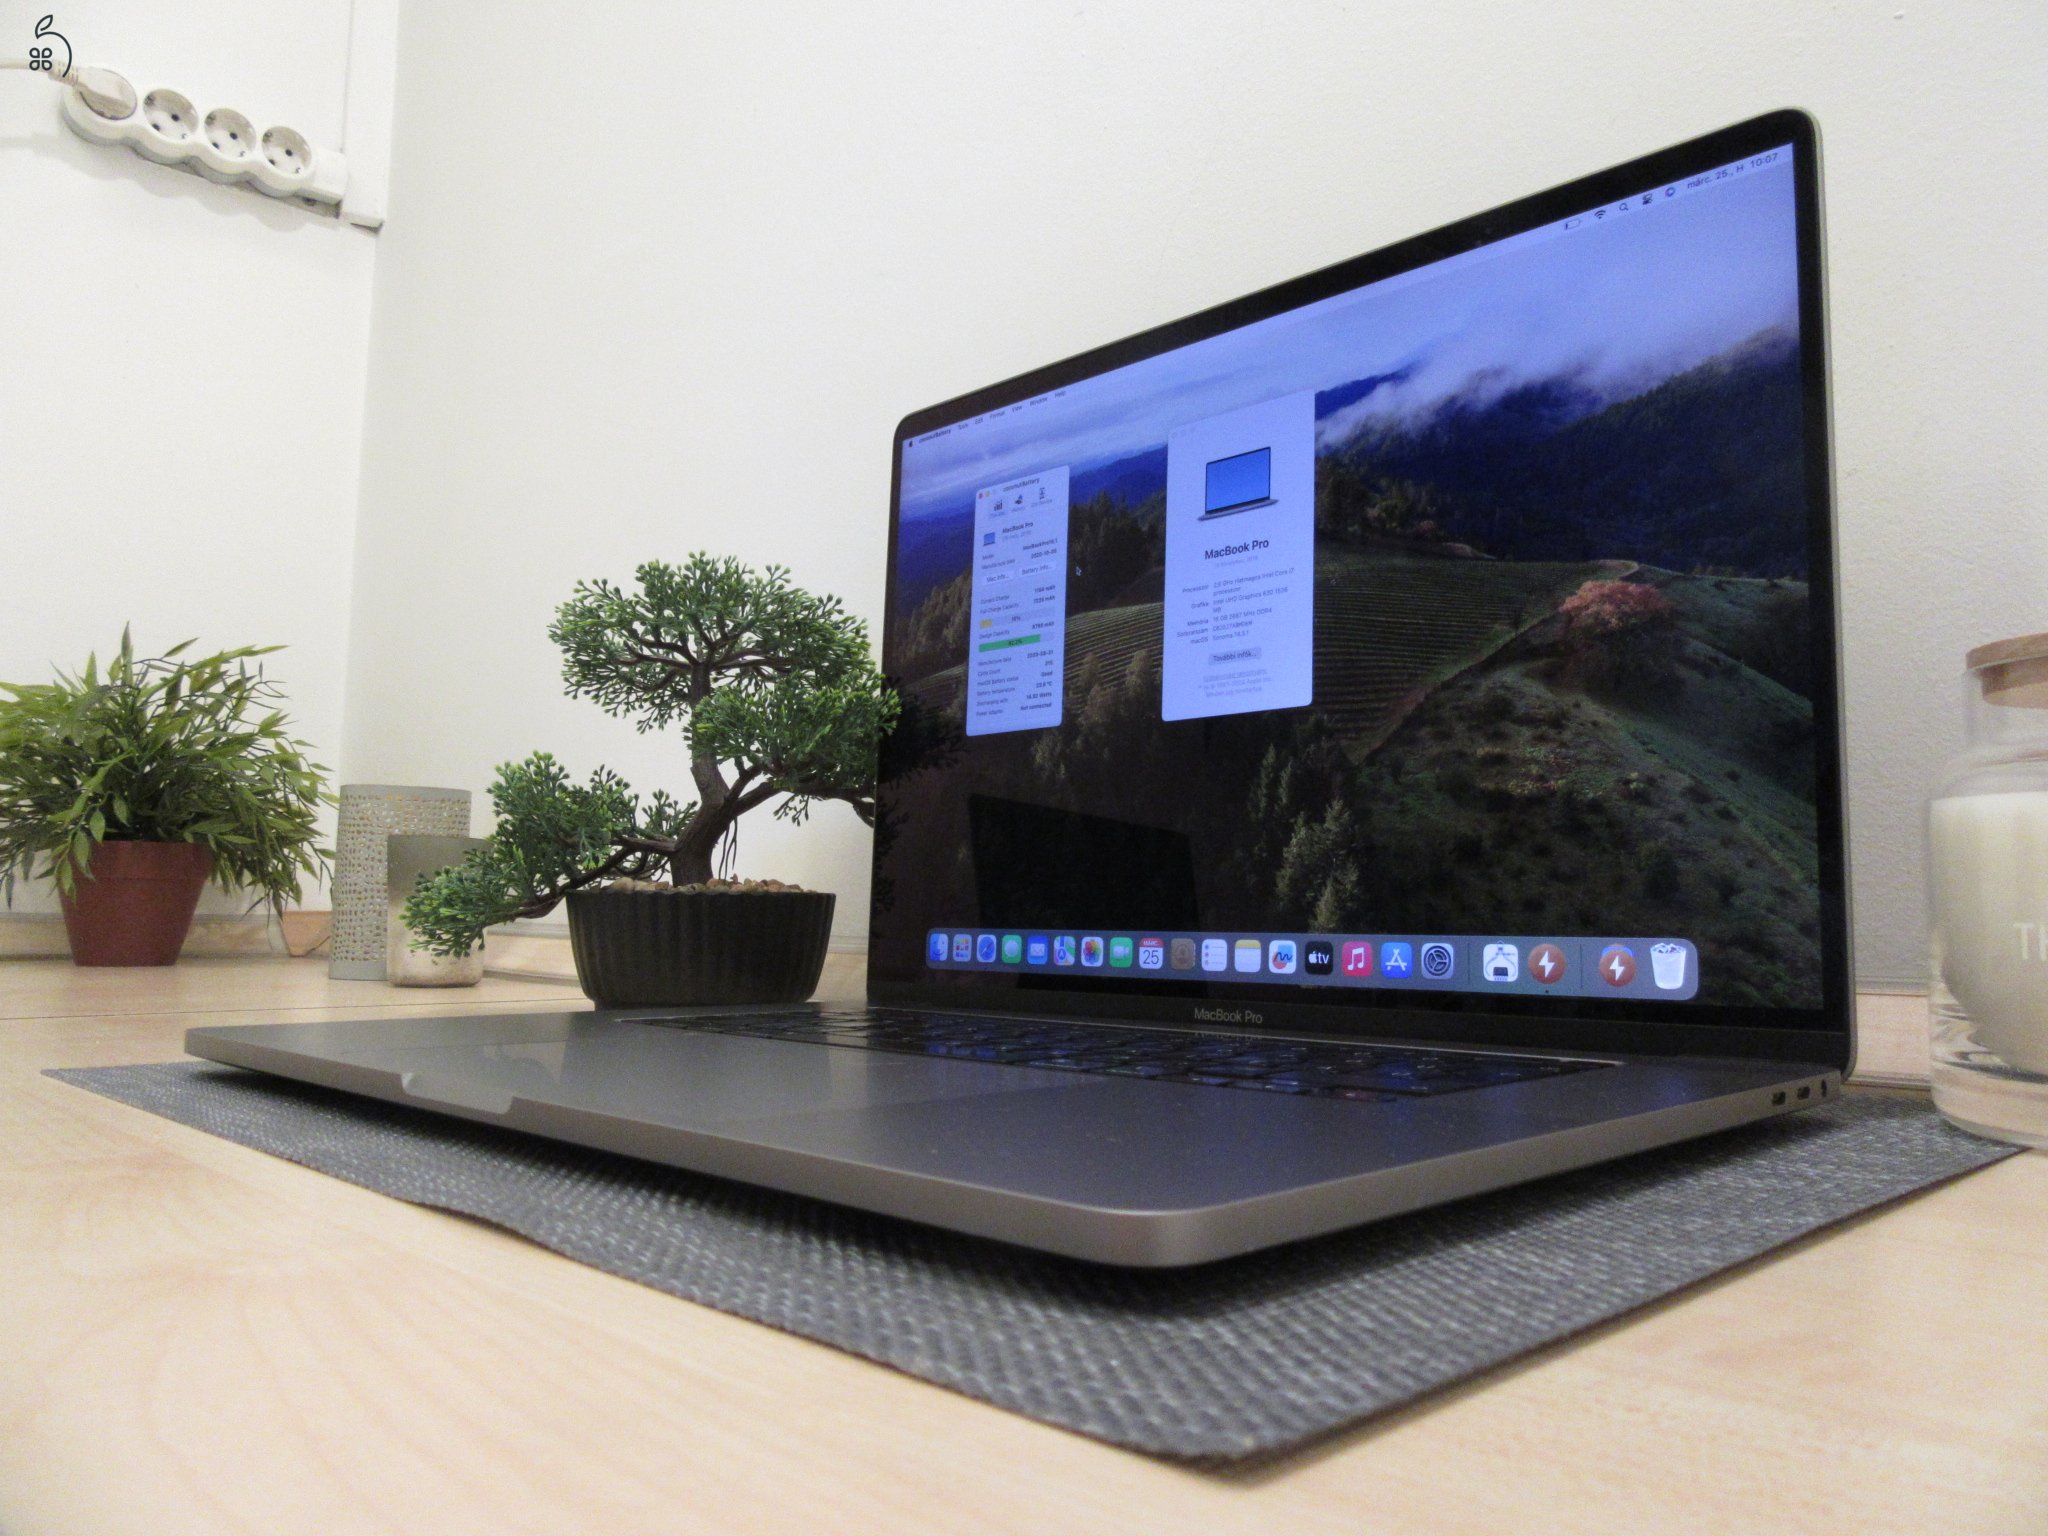  Apple Retina Macbook Pro 16 - 2019 - Használt, szép állapot. 27% Áfát tartalmaz 